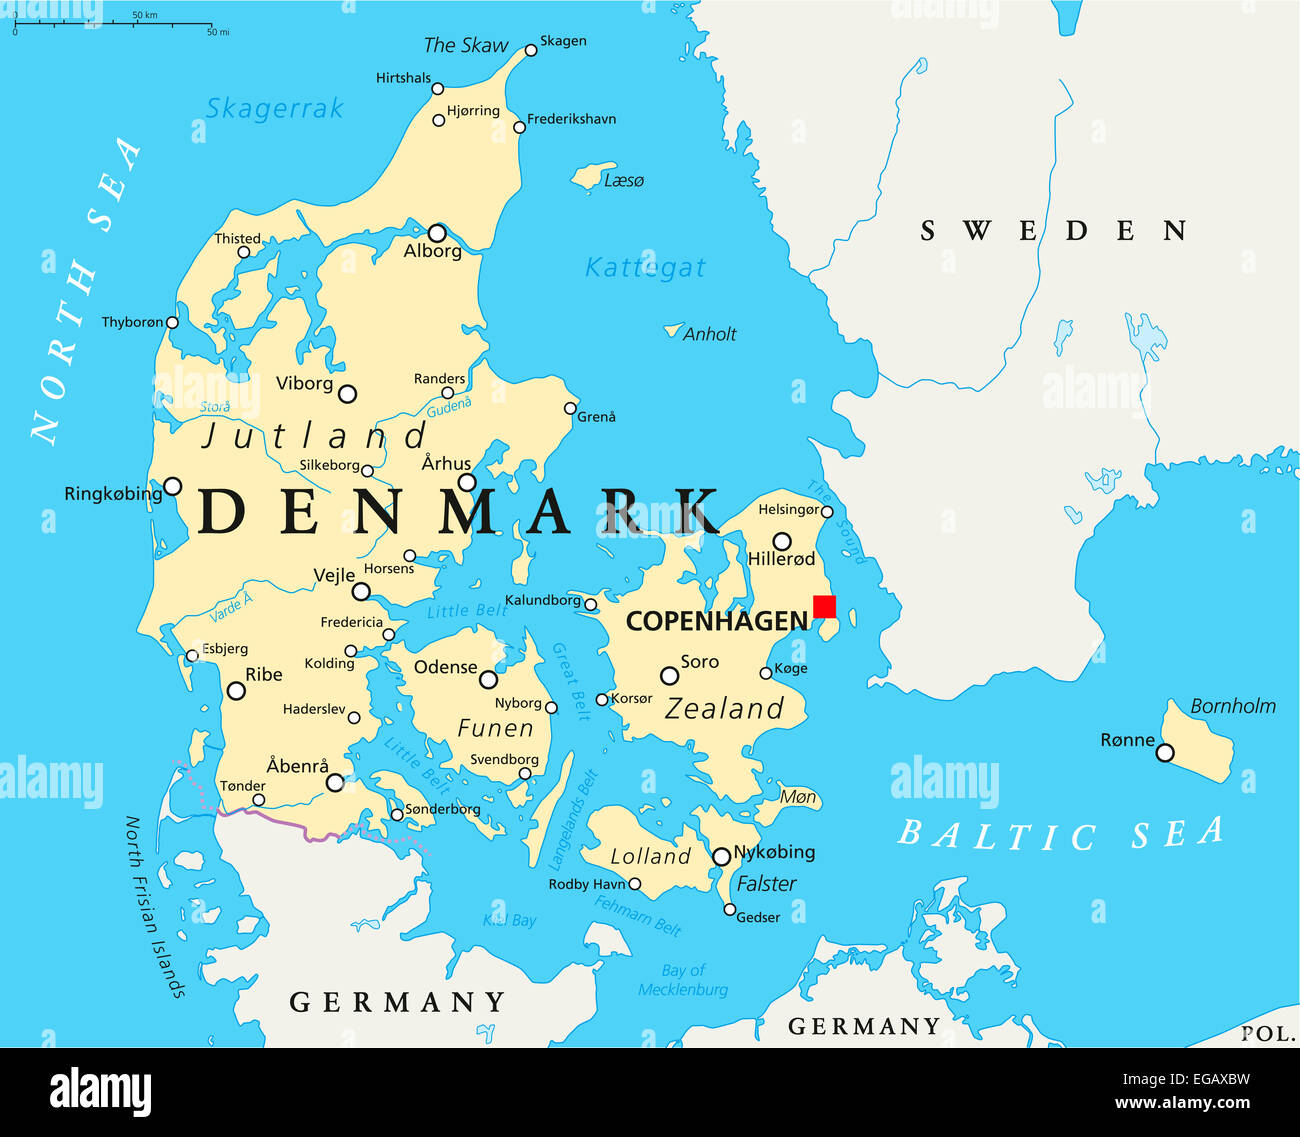 La Danimarca Mappa Politico con capitale Copenhagen i confini nazionali, importanti città e fiumi. Etichetta inglese e la scala. Foto Stock